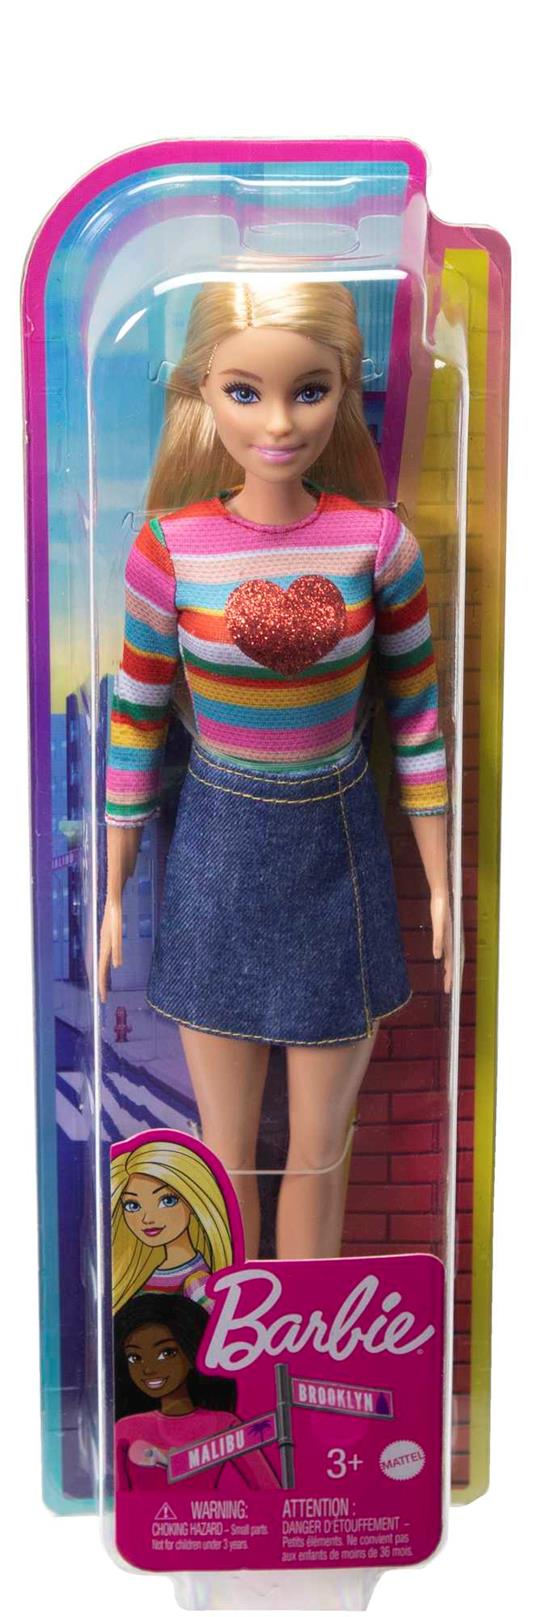 Barbie - Barbie Siamo in Due Barbie "Malibu" Roberts, bambola bionda con maglia arcobaleno, gonna di jeans e scarpe - 6